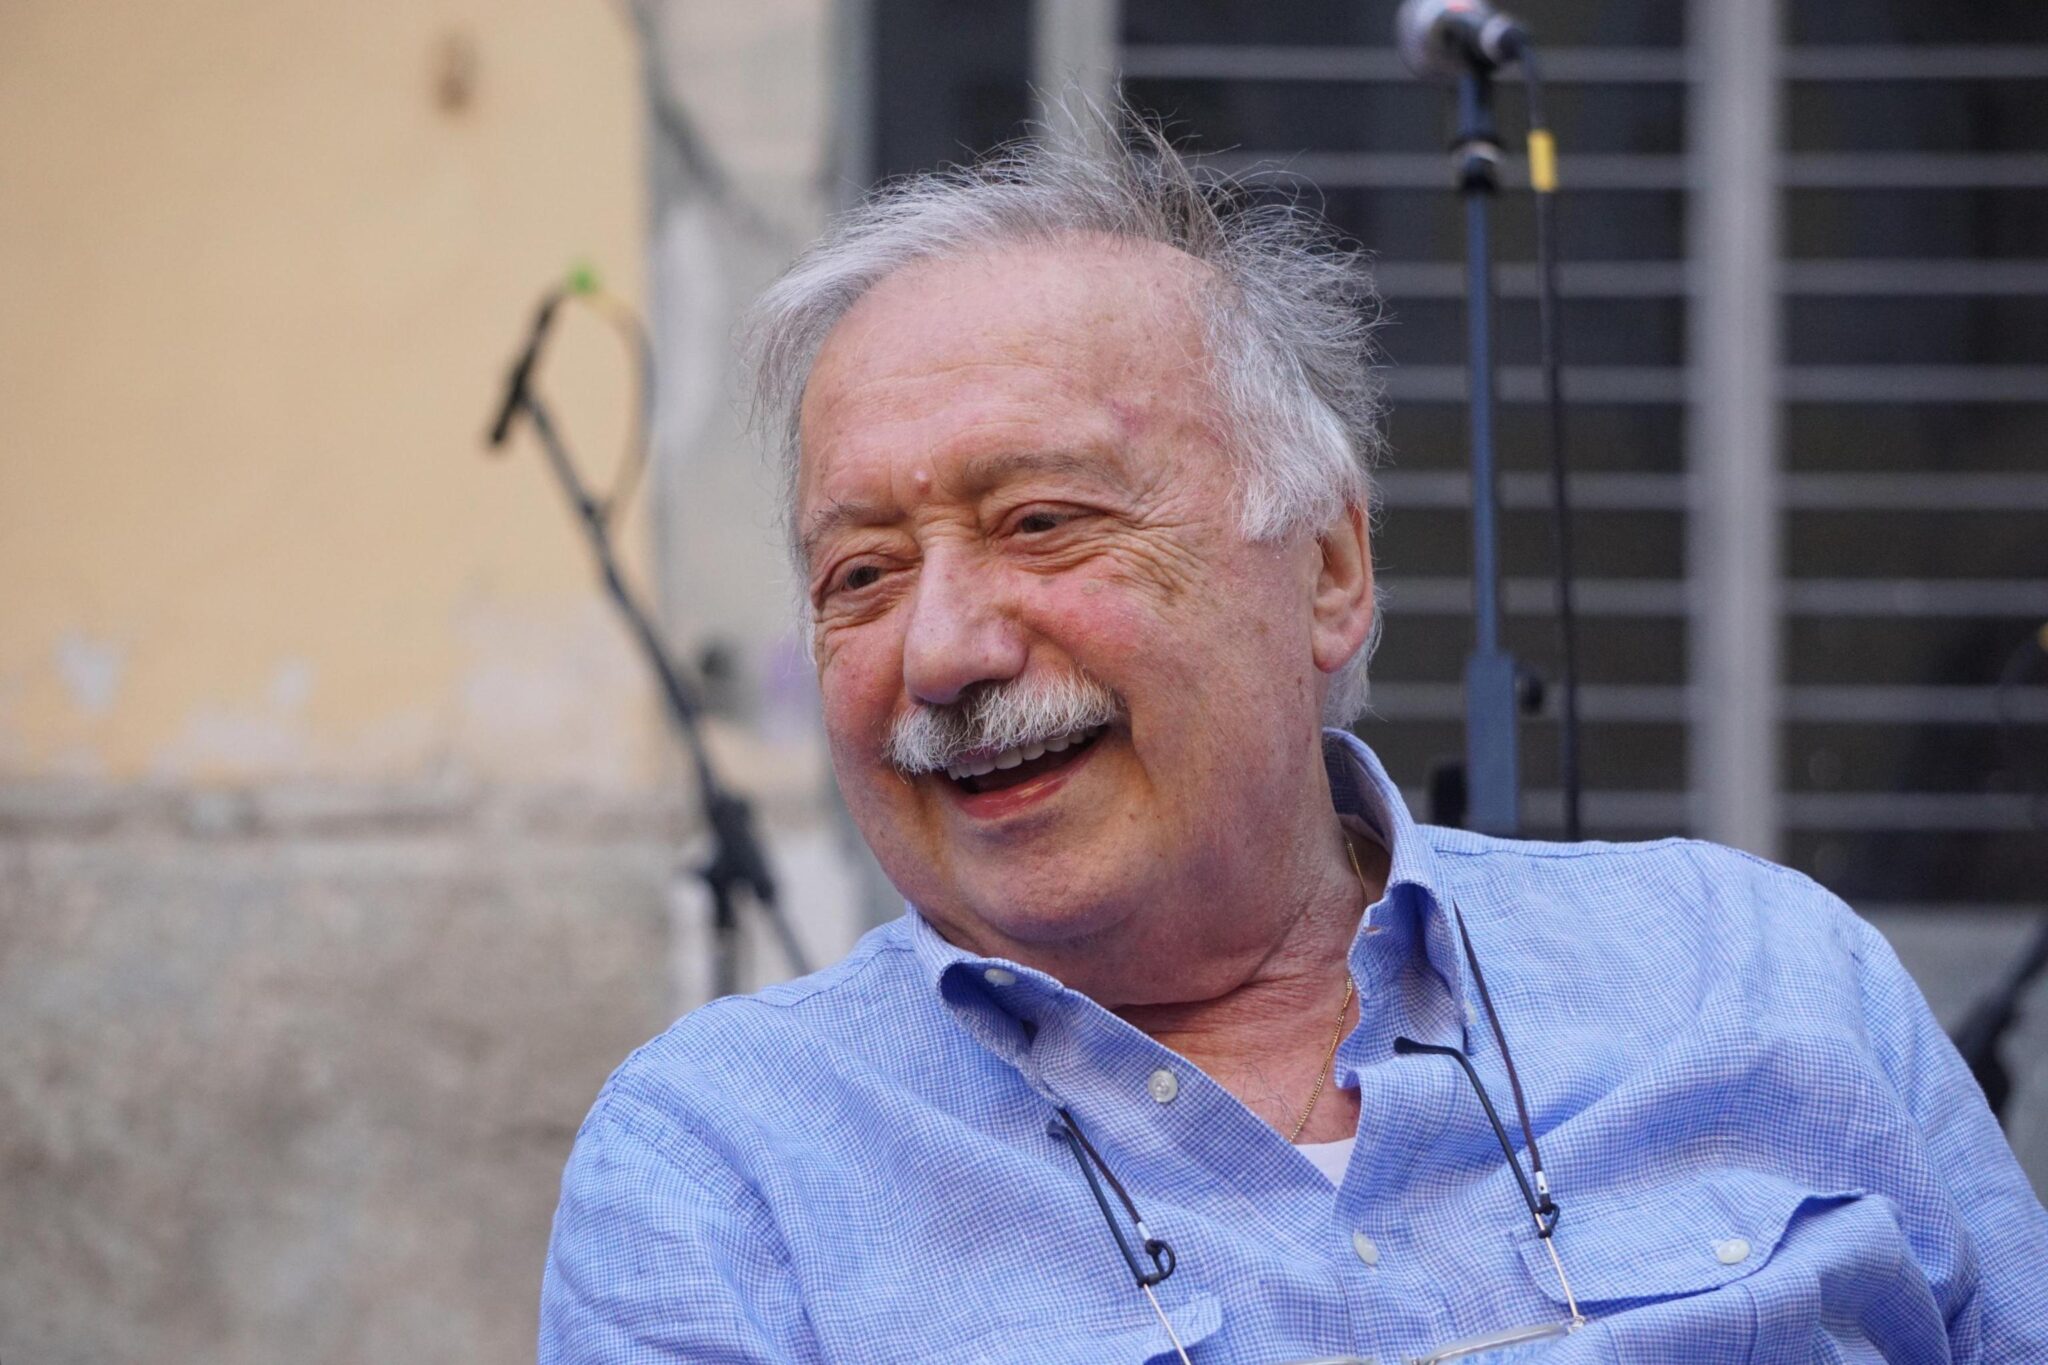 L’Italia piange la scomparsa di un noto giornalista: addio a Gianni Minà